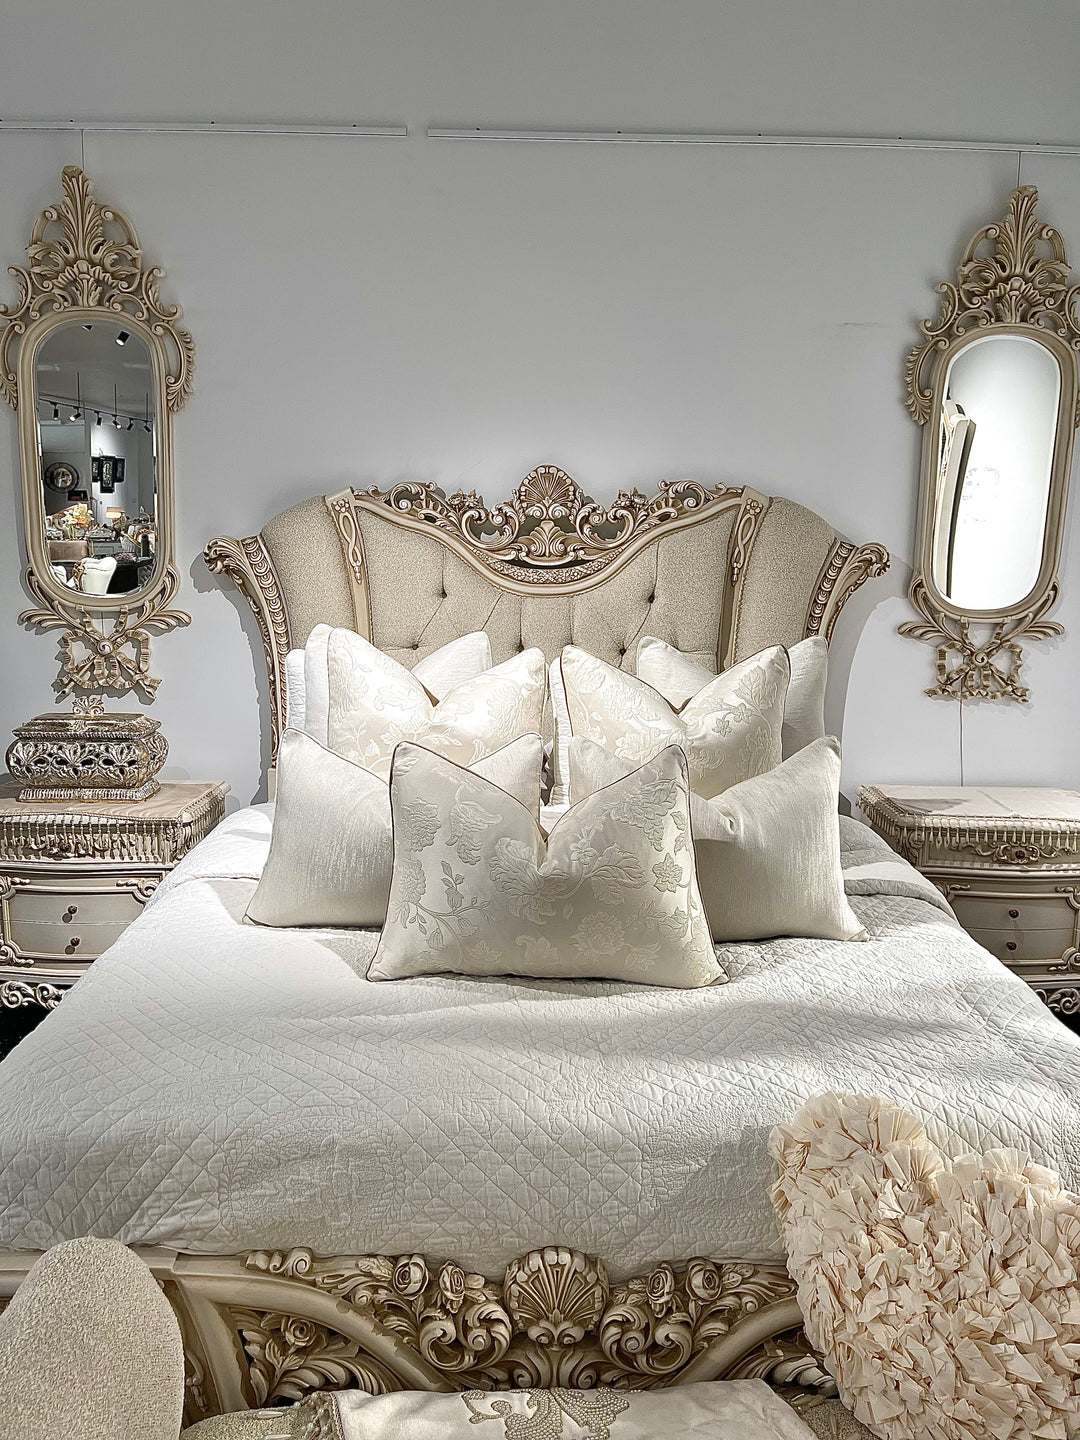 The Egyptian Elegance Full Bedroom Set-Queen